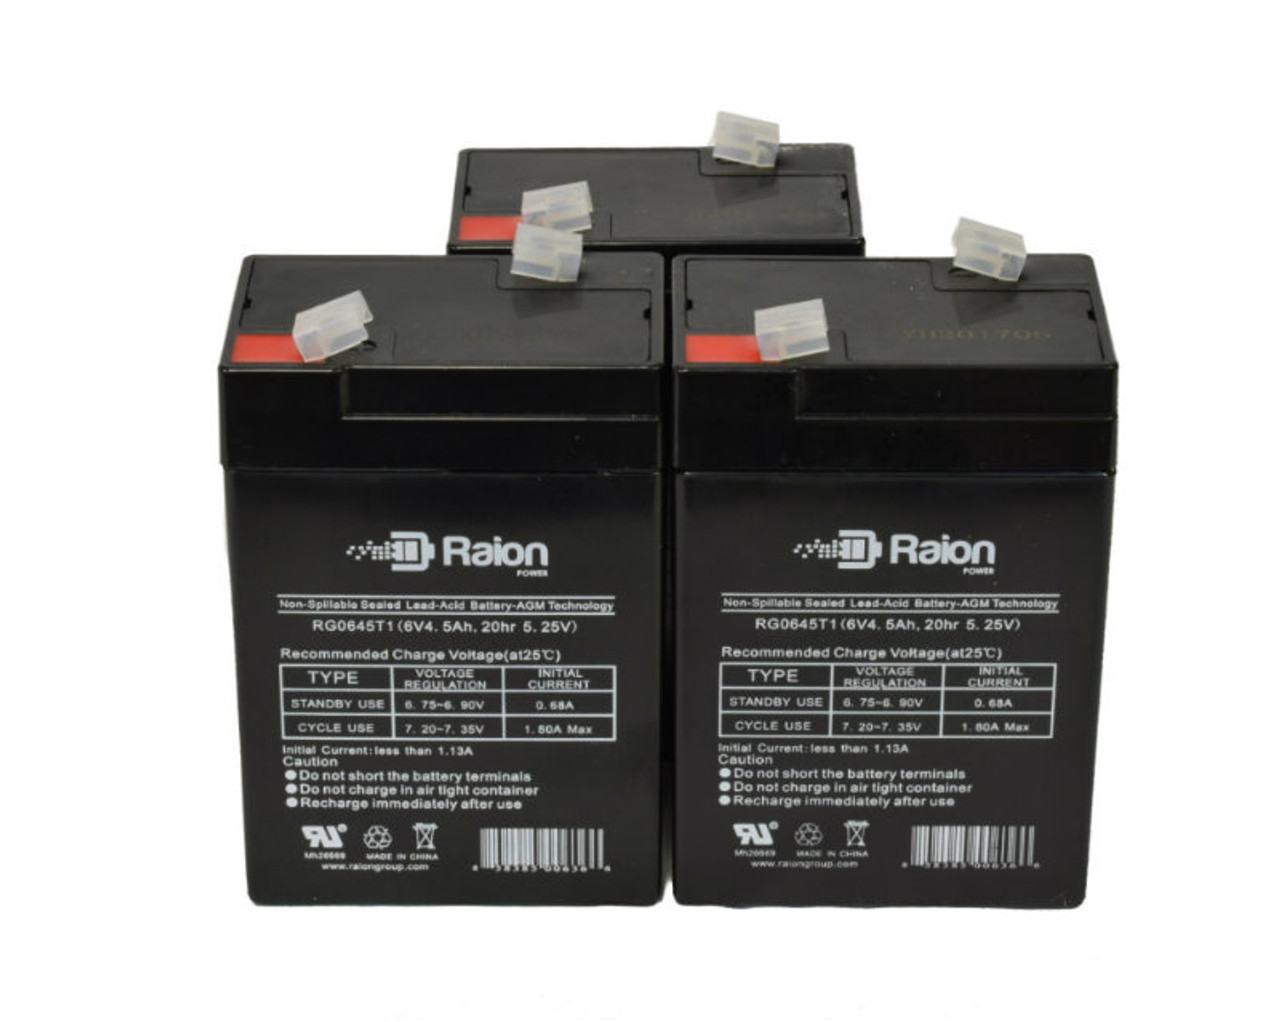 Raion Power 6V 4.5Ah Replacement Emergency Light Battery for Emergi-Lite PMP6V5 - 3 Pack